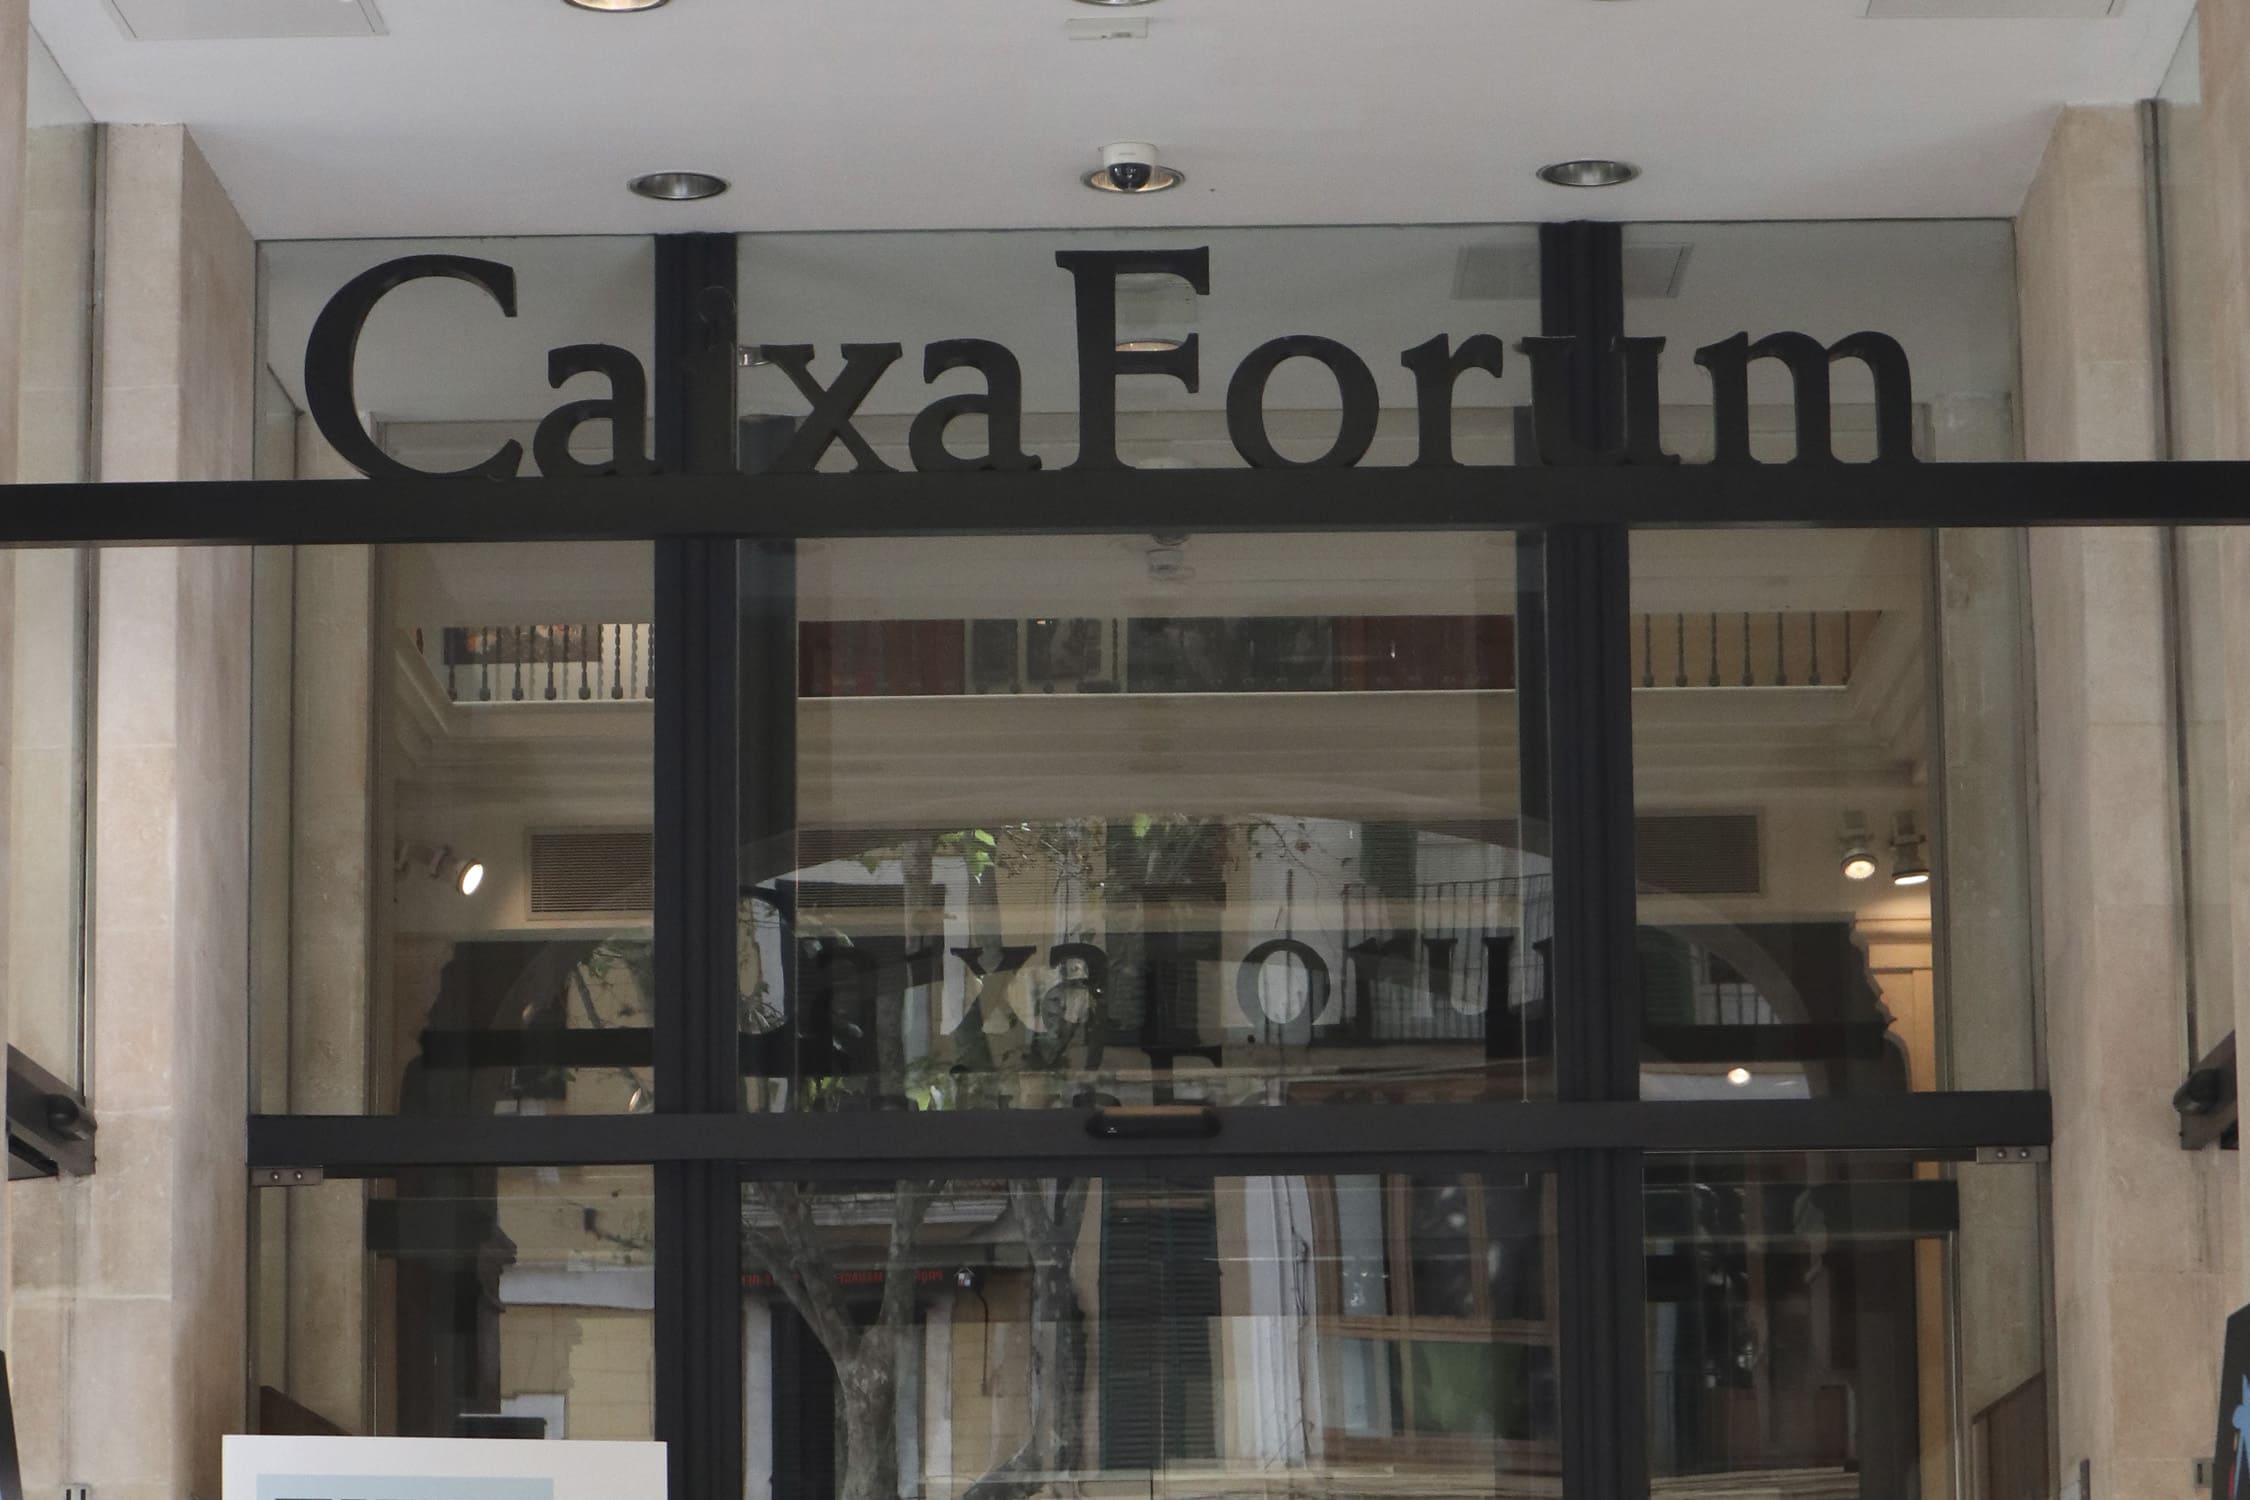 Imagen fondo proyecto estructura metálica de acceso al edificio de Caixa Forum